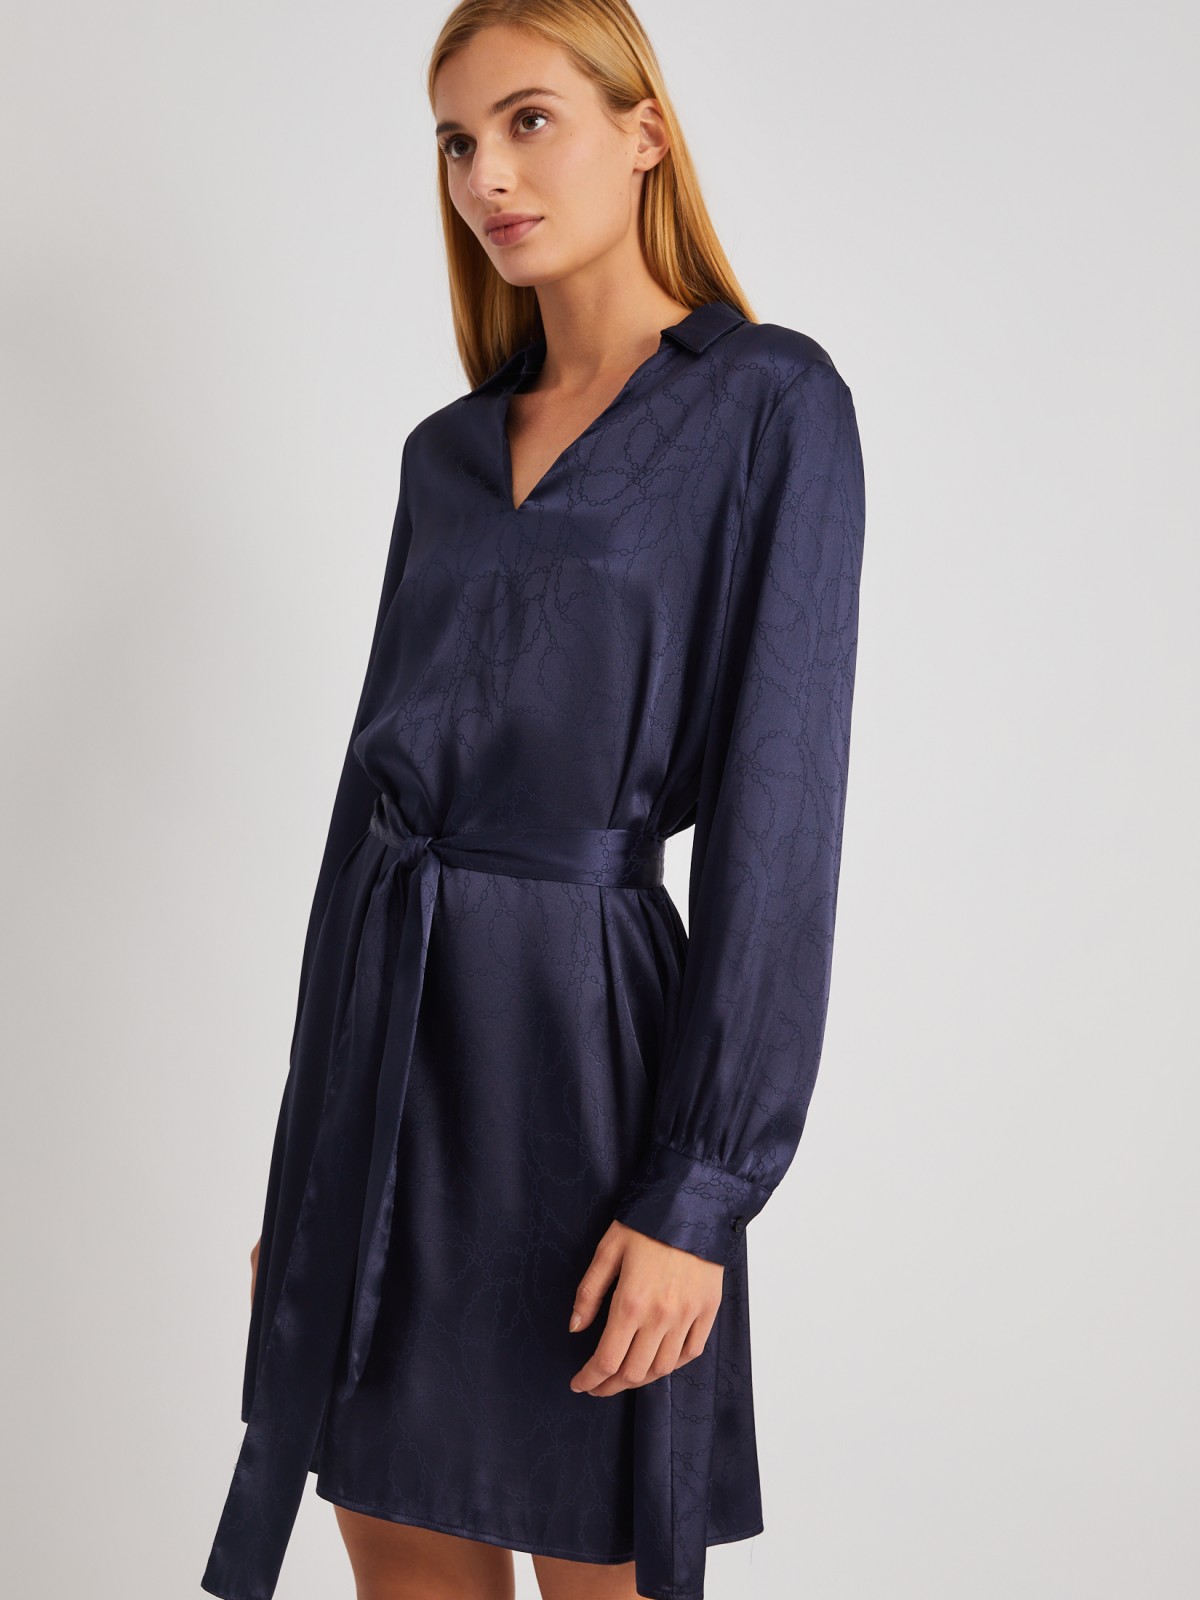 Атласное платье длины мини с воротником и акцентном на талии zolla 024118262193, цвет синий, размер XS - фото 5